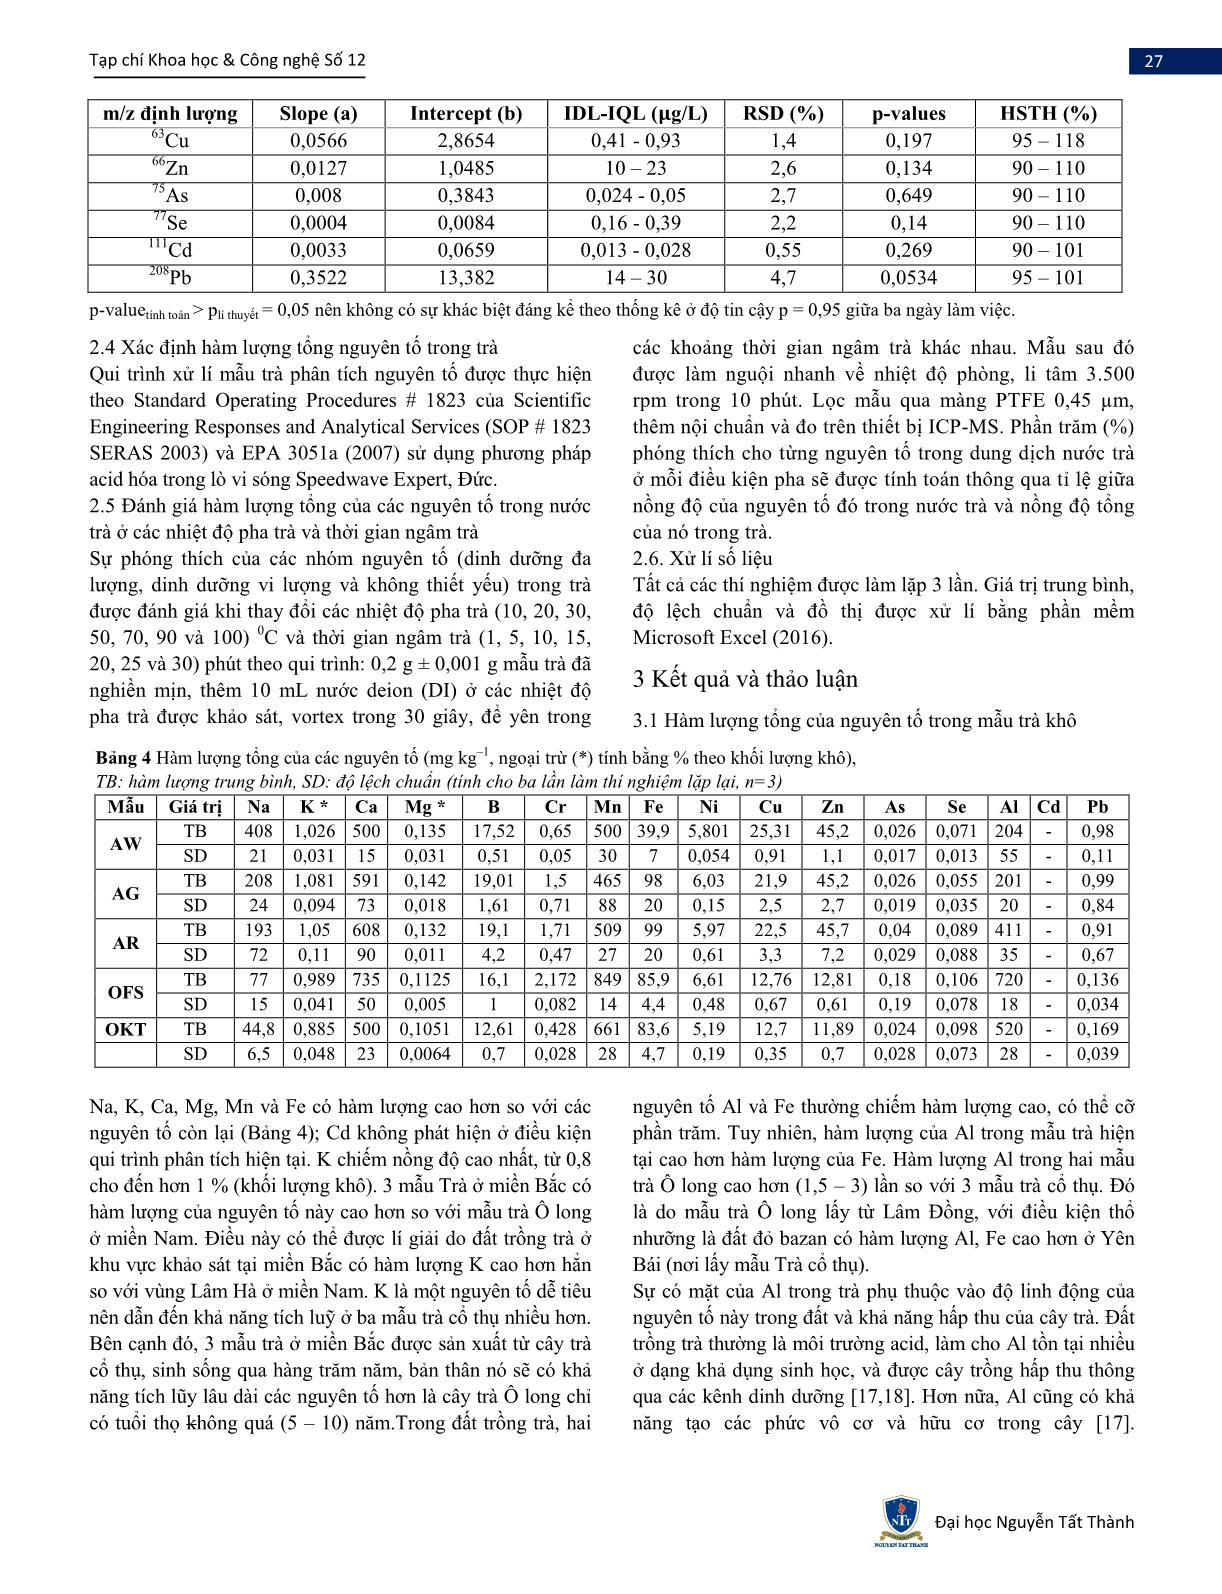 Đánh giá hàm lượng đa nguyên tố trong nước trà của một số loại trà ở Việt Nam trang 3